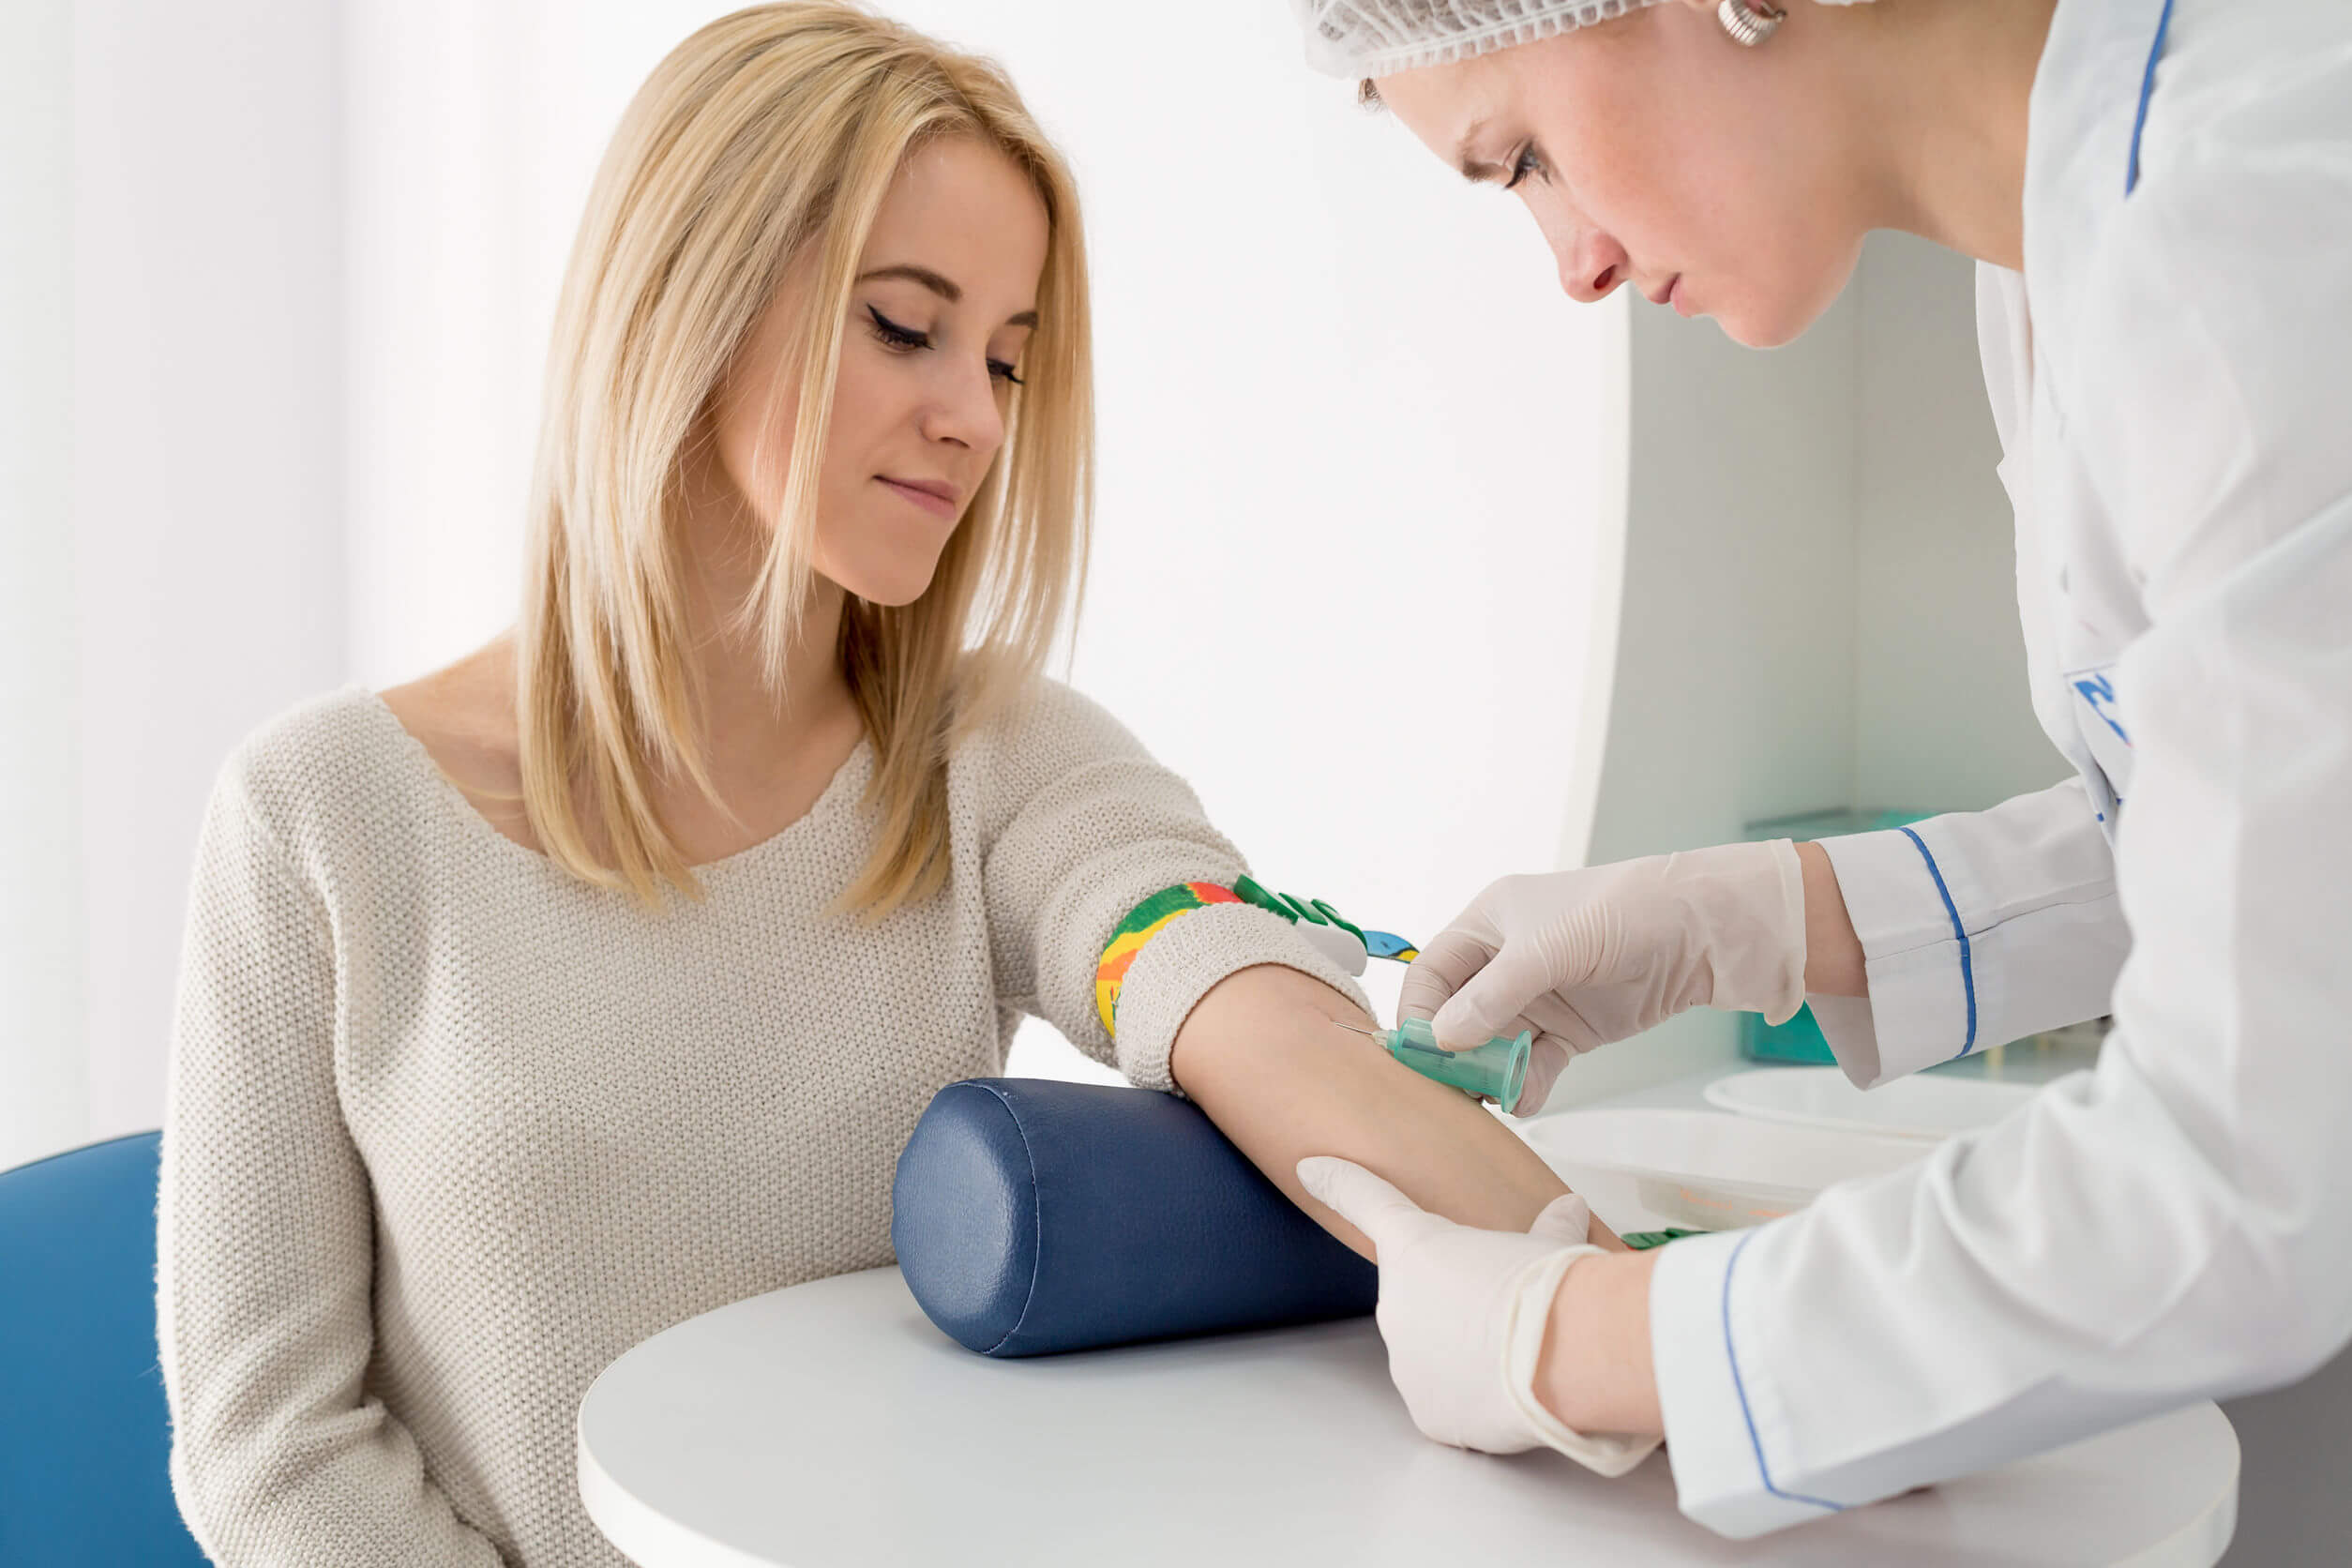 O exame de sangue deve ser realizado por profissionais em análises clínicas.